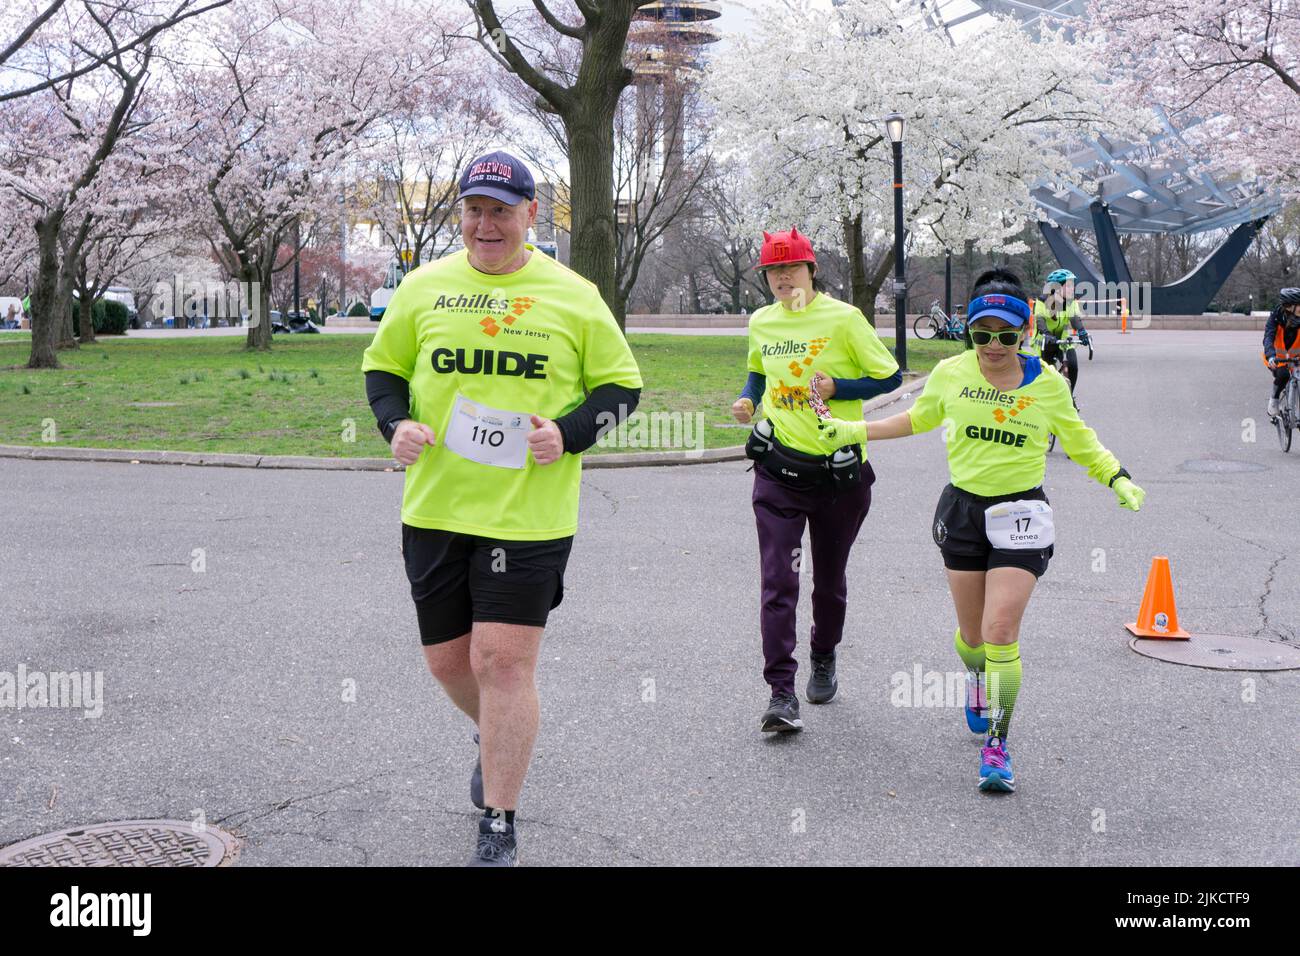 Des volontaires du club de course international d'Achilles du New Jersey guident une femme asiatique américaine dans un demi-marathon dans un parc à Queens, New York. Banque D'Images